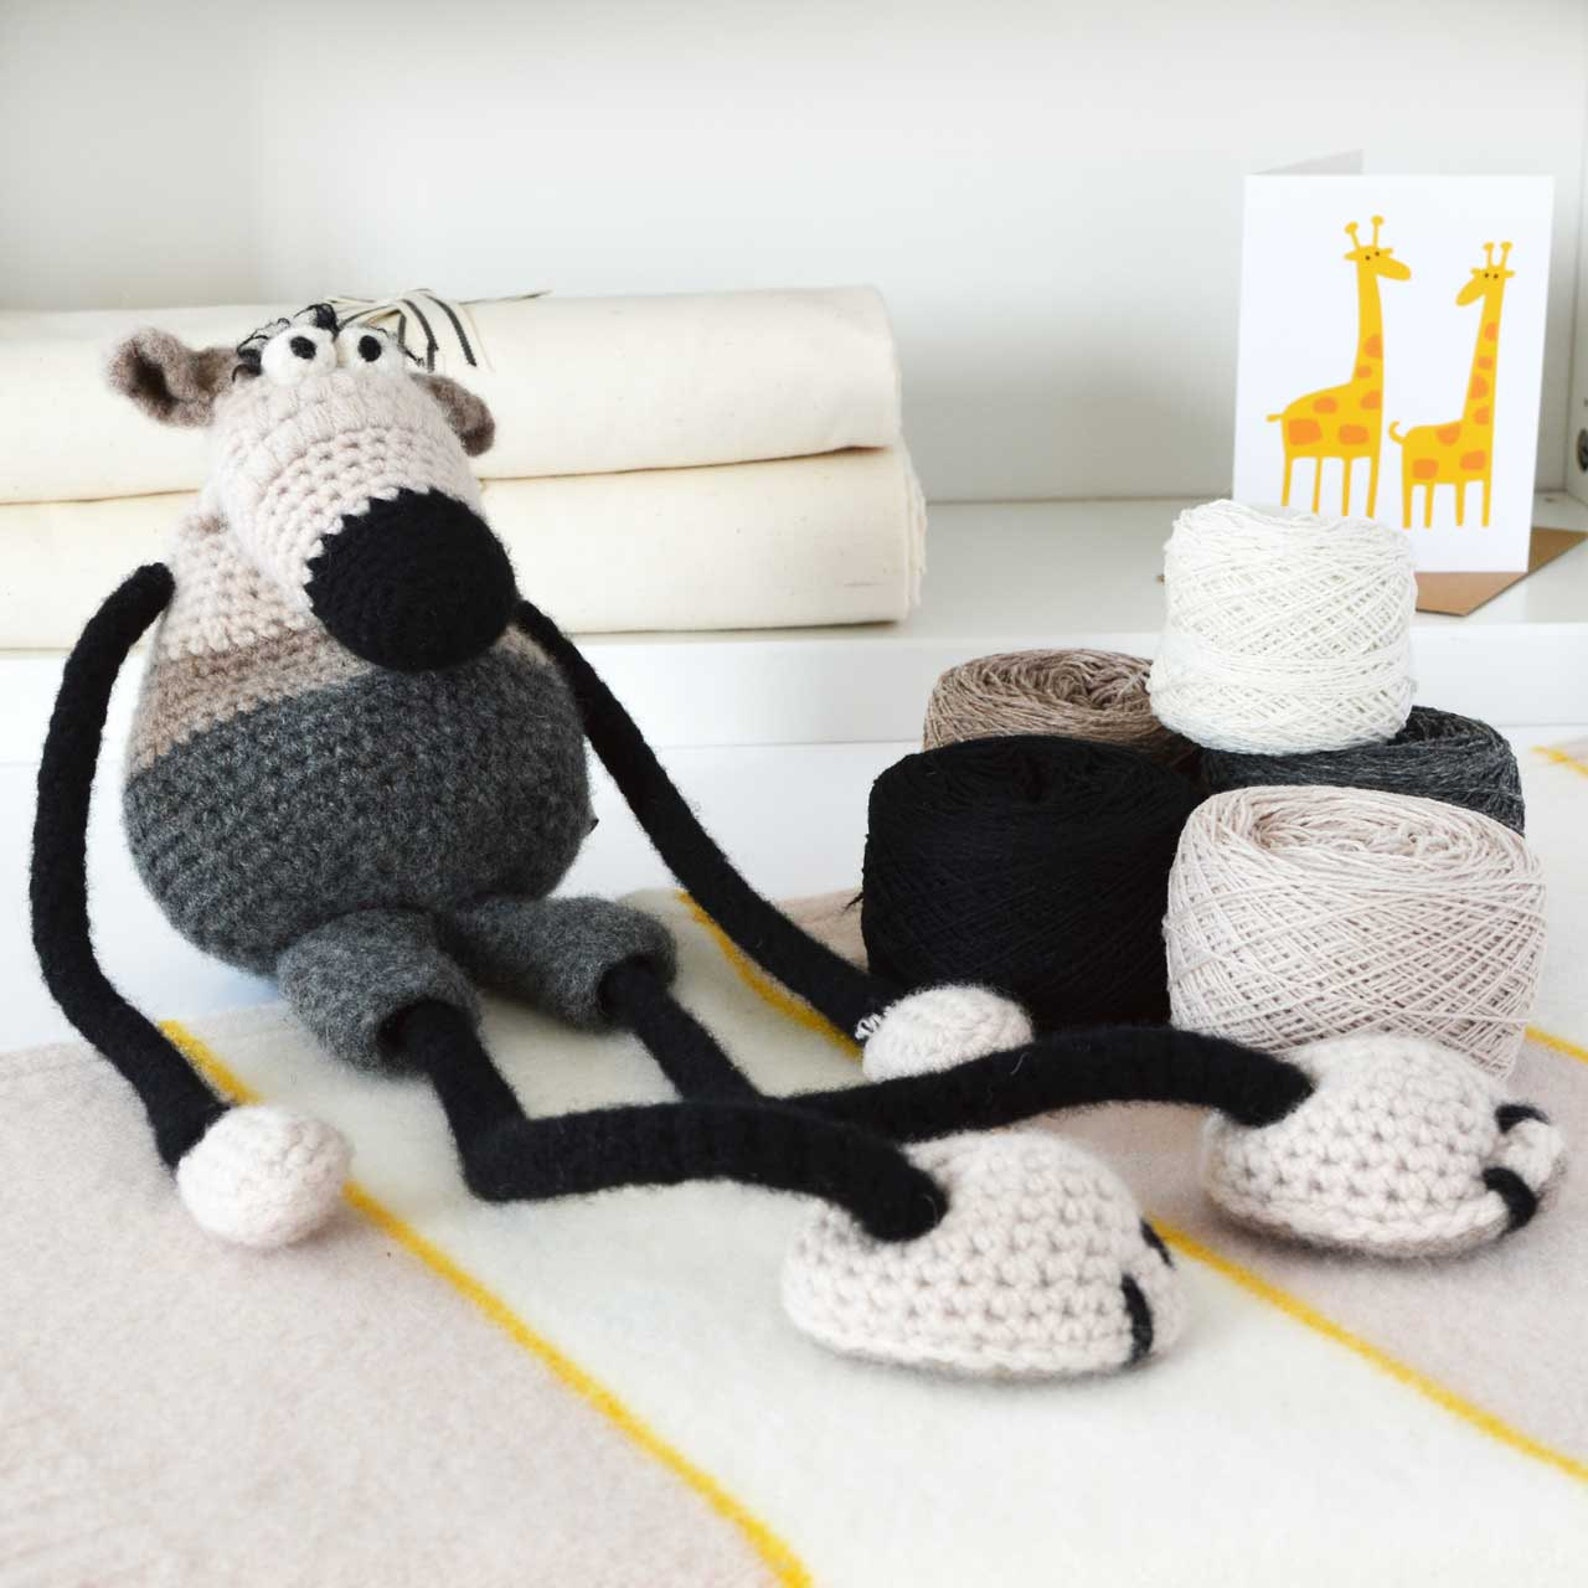 Наборы амигуруми. Амигуруми набор. Crochet Kit. Etsy Crochet Kit. Турецкий набор Amigurumi Hobi Seti.